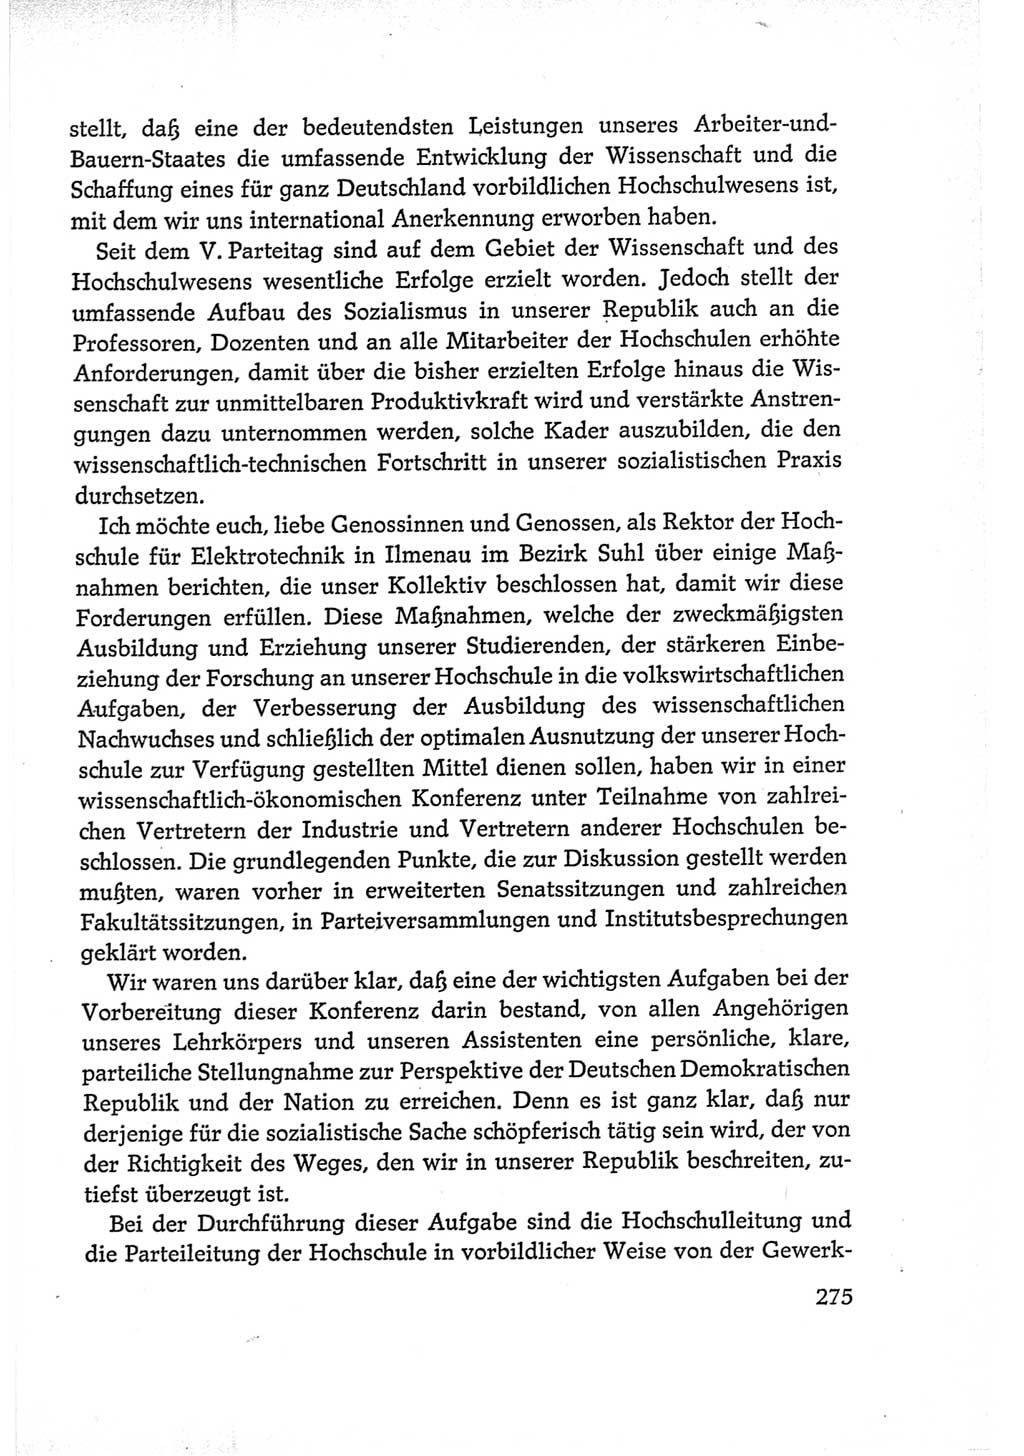 Protokoll der Verhandlungen des Ⅵ. Parteitages der Sozialistischen Einheitspartei Deutschlands (SED) [Deutsche Demokratische Republik (DDR)] 1963, Band Ⅰ, Seite 275 (Prot. Verh. Ⅵ. PT SED DDR 1963, Bd. Ⅰ, S. 275)